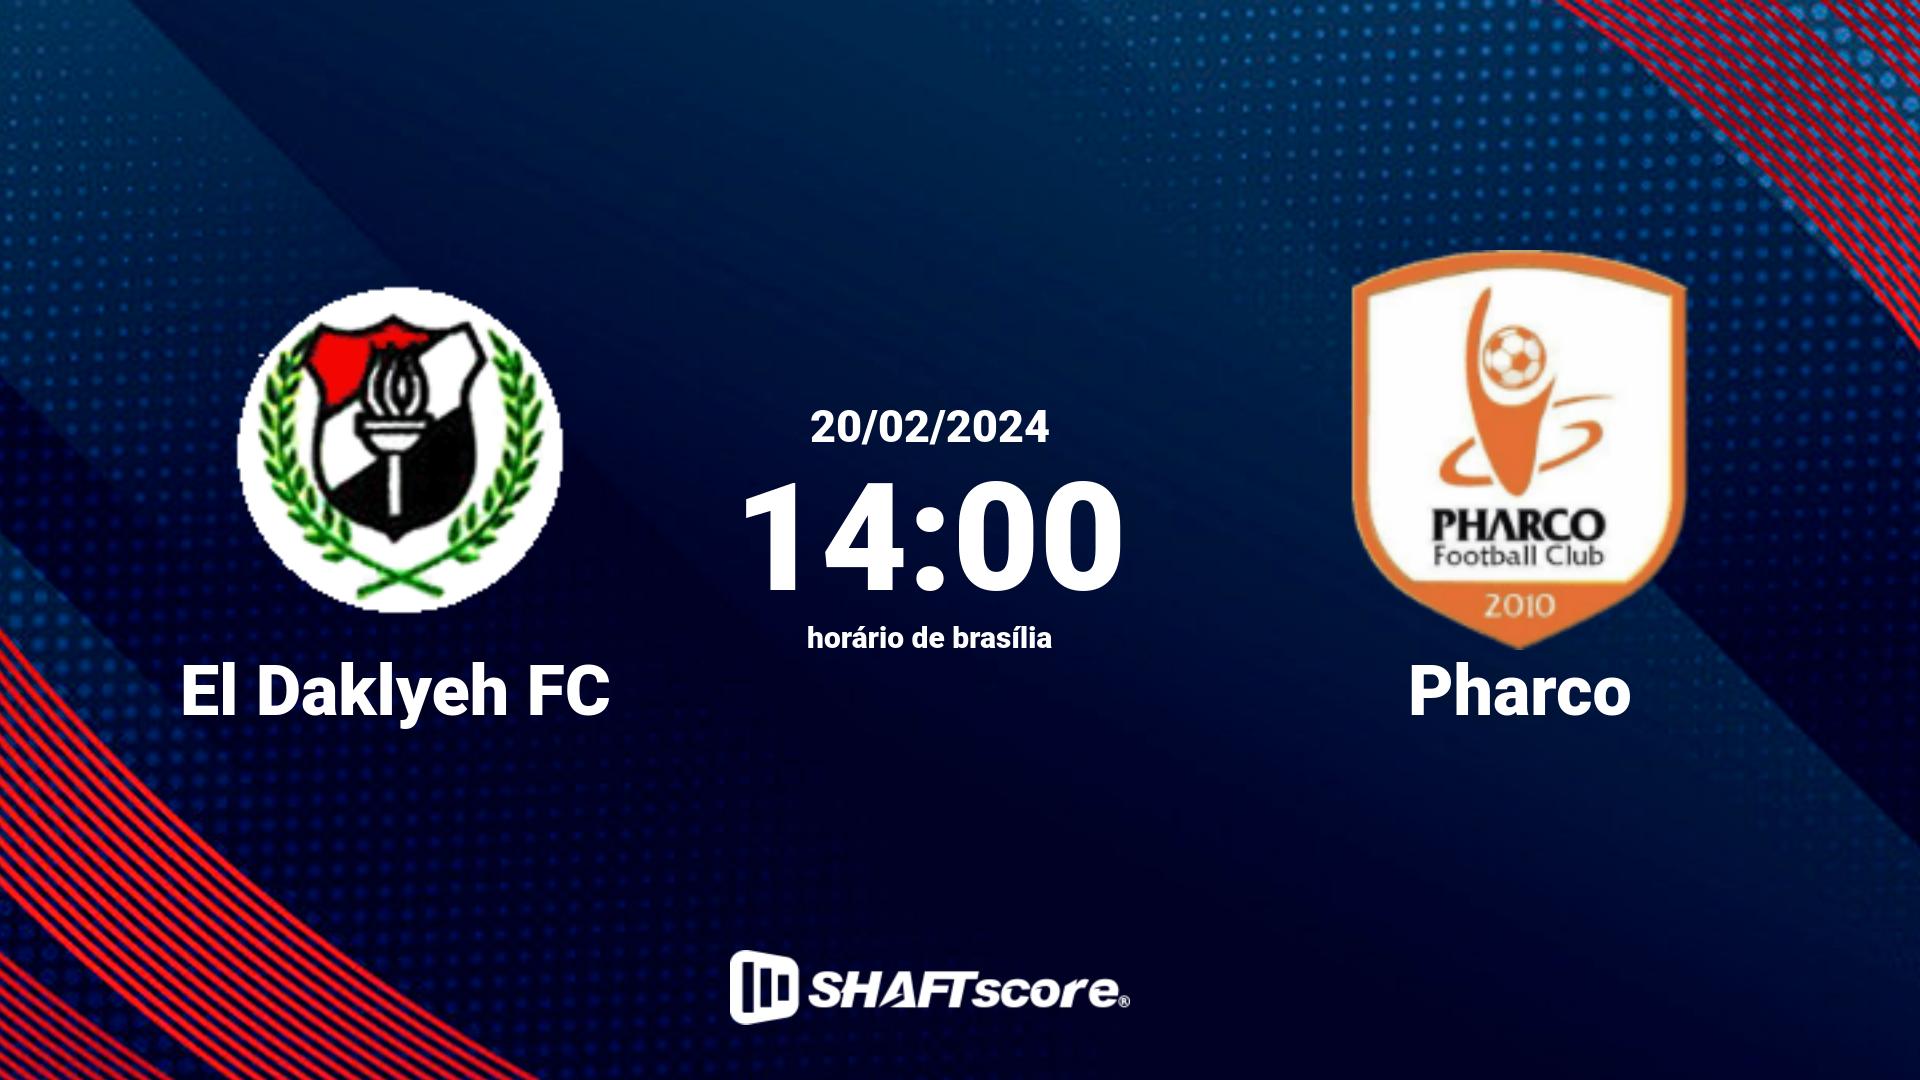 Estatísticas do jogo El Daklyeh FC vs Pharco 20.02 14:00